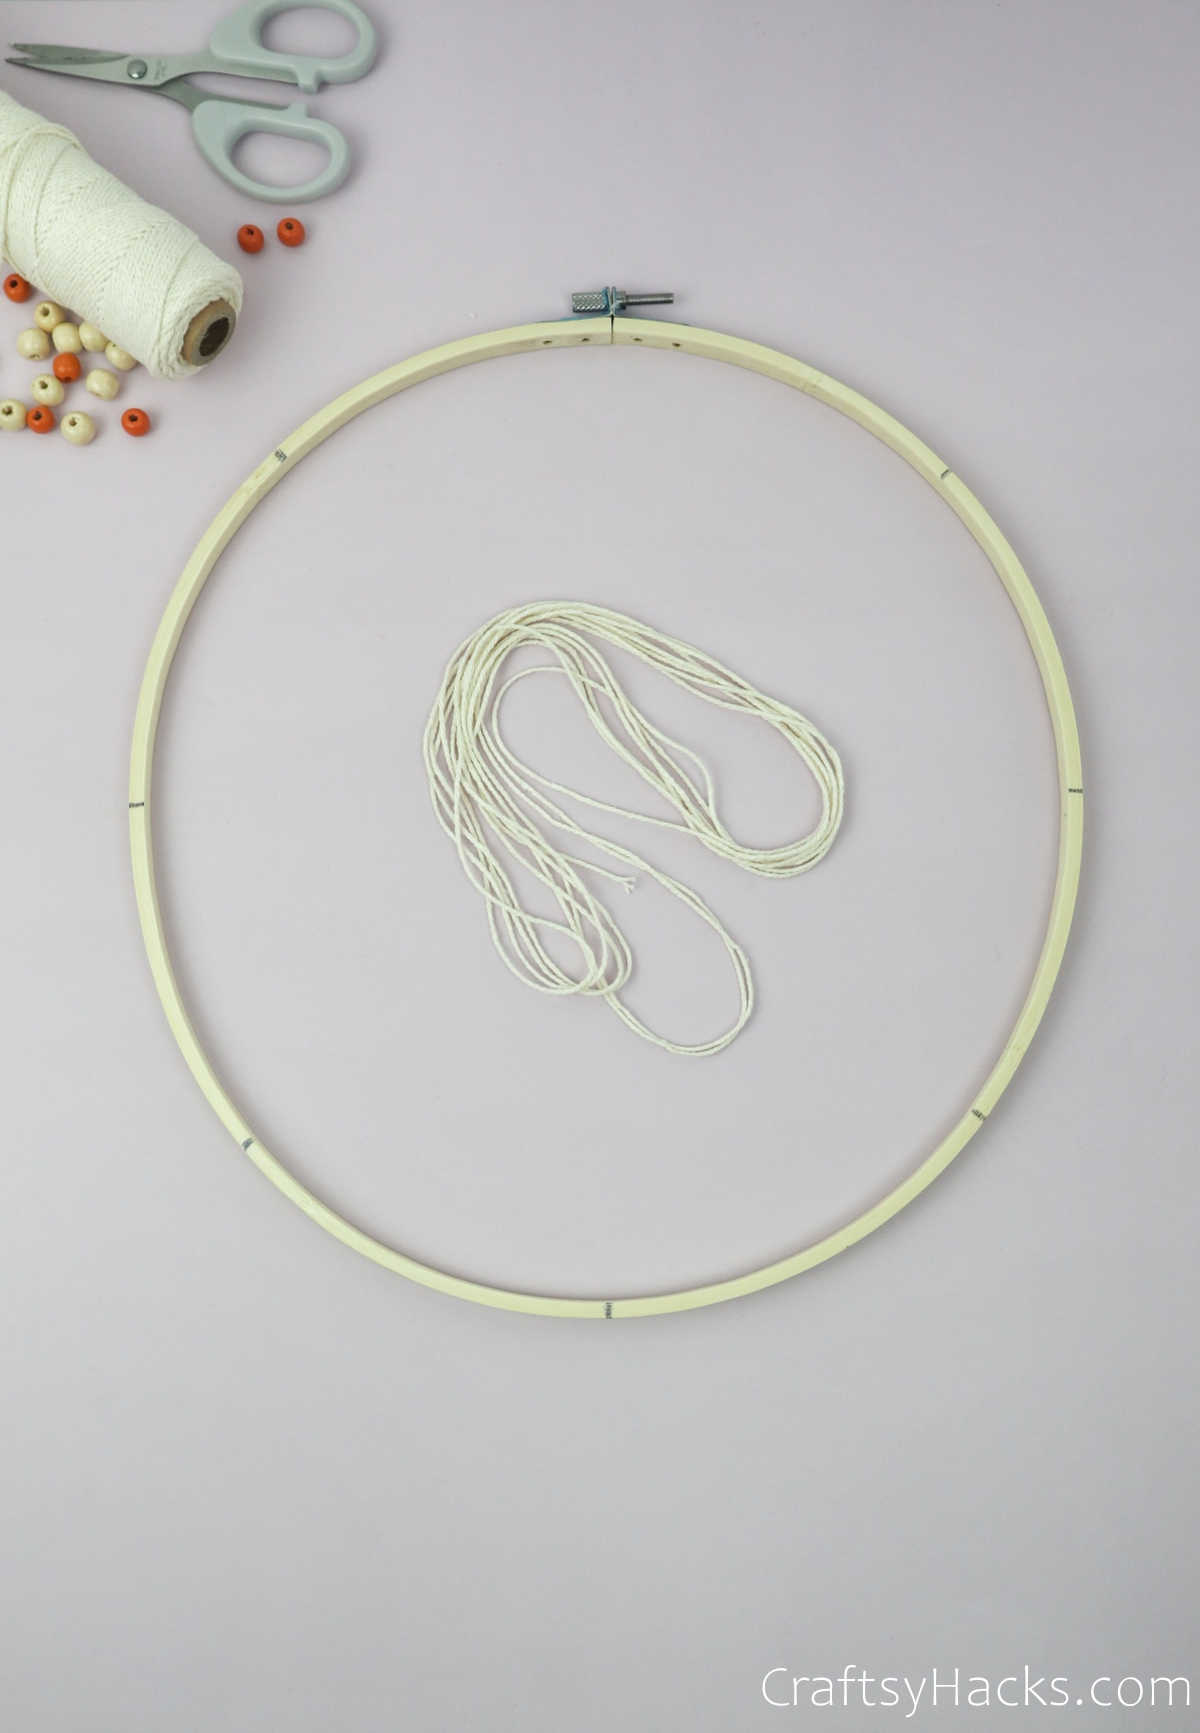 bundle on string in hoop